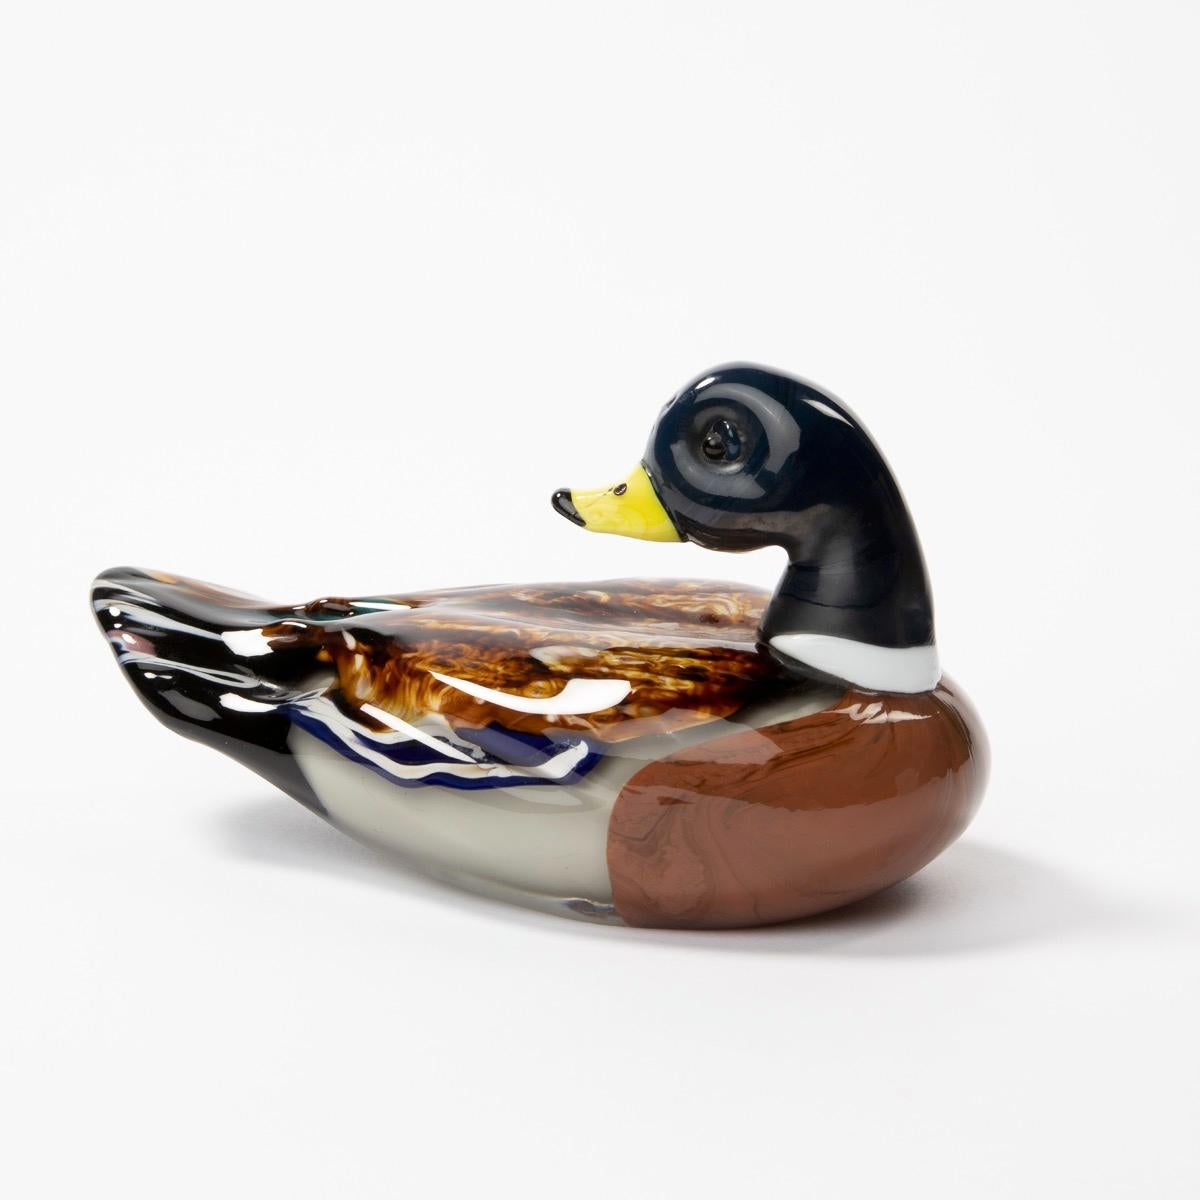 Die Skulpturen von Toni Zuccheri stellen ein Entenpaar in polychromem Glas mit einer subtilen Mischung von Farben für tiefe Details dar.

Wir sind in Belgien ansässig und präsentieren Kunsthandwerk der Nachkriegszeit mit Schwerpunkt auf der Linie